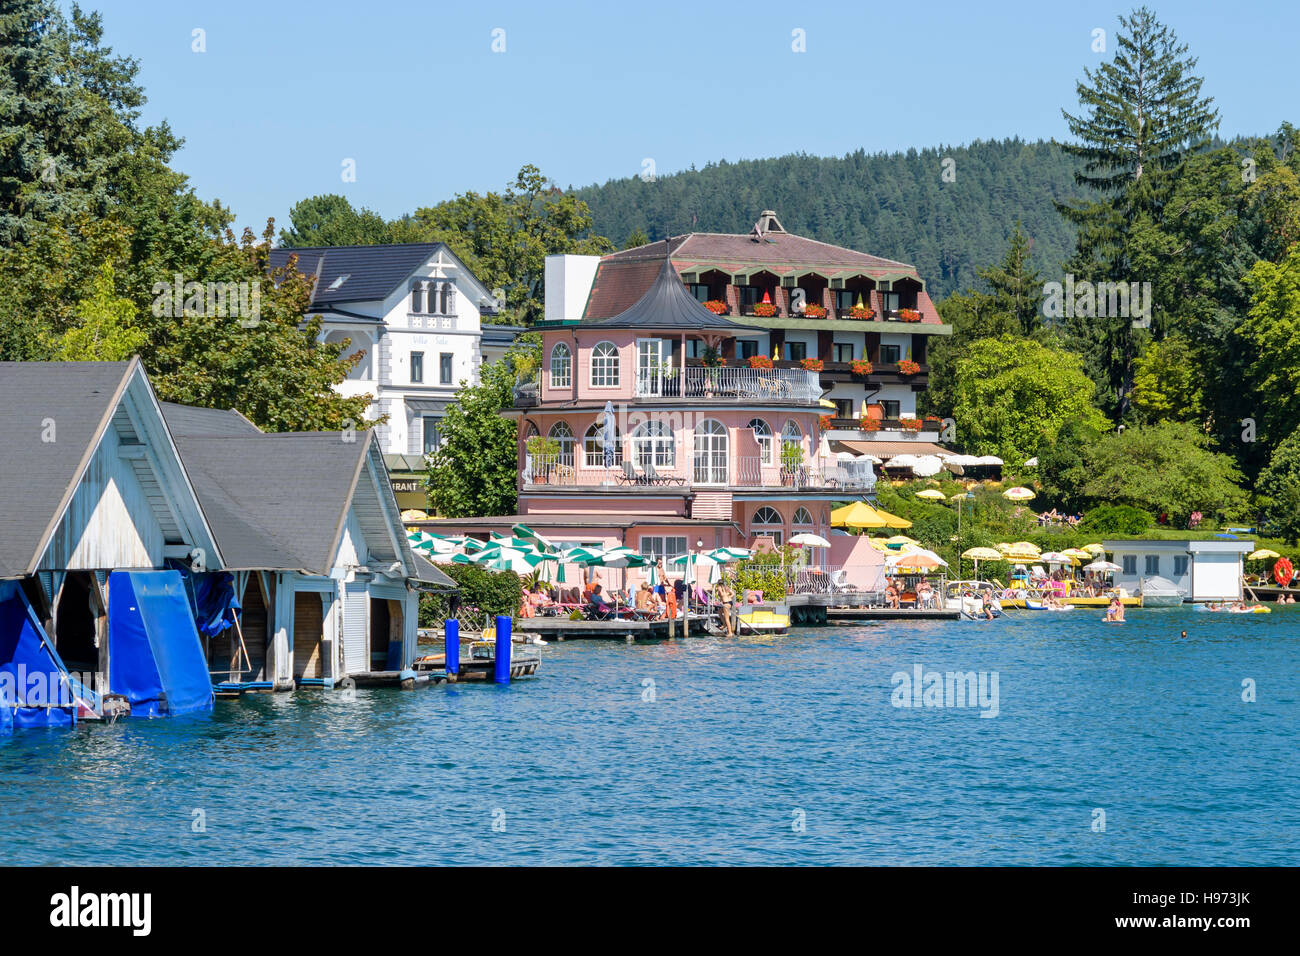 Summer resort Portschach am Worthersee et Lake Worth (Worthersee) en Autriche Banque D'Images